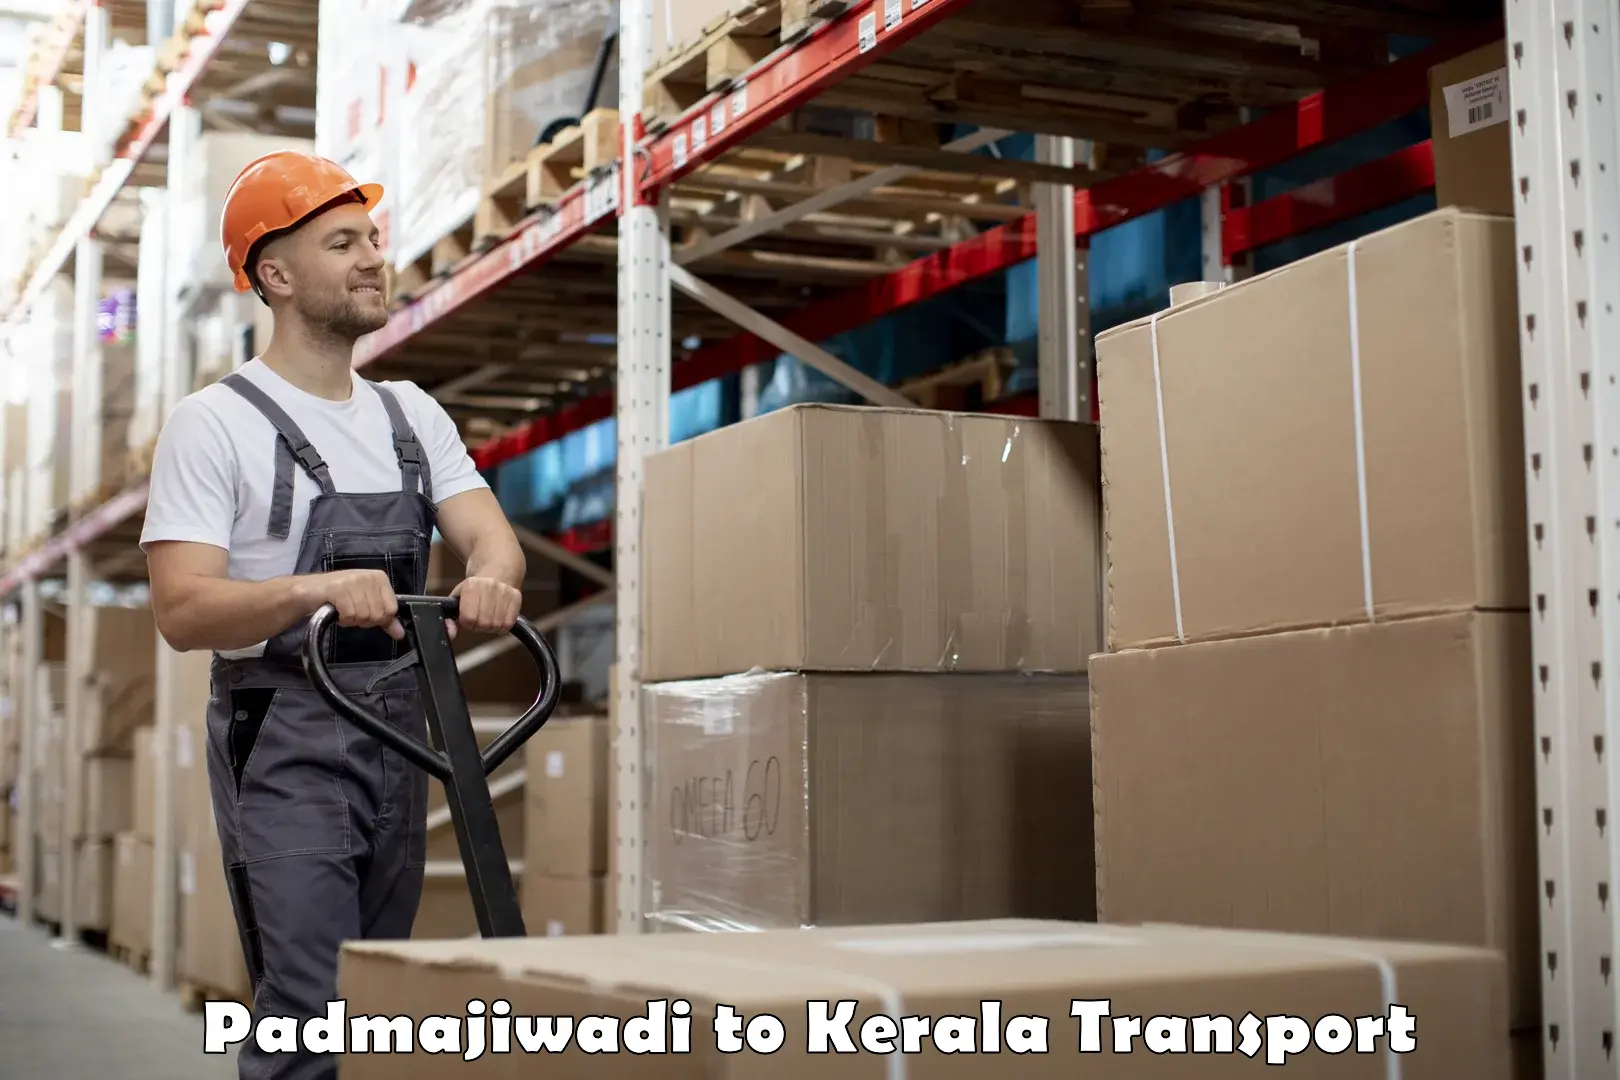 Furniture transport service Padmajiwadi to Ponnani